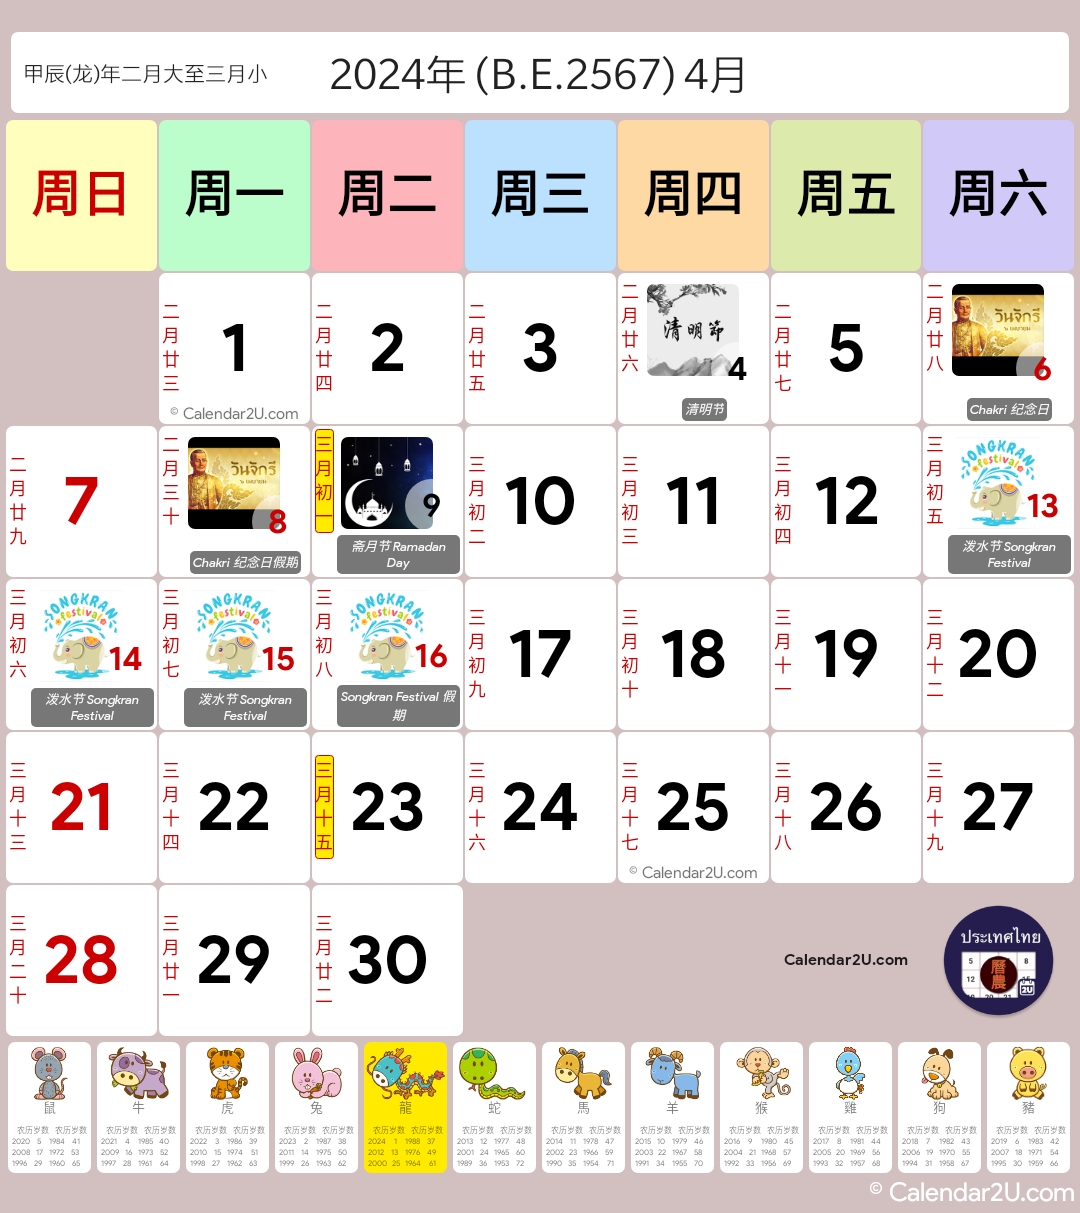 ประเทศไทย - จันทรคติจีน (Thailand - Chinese Lunar) Calendar